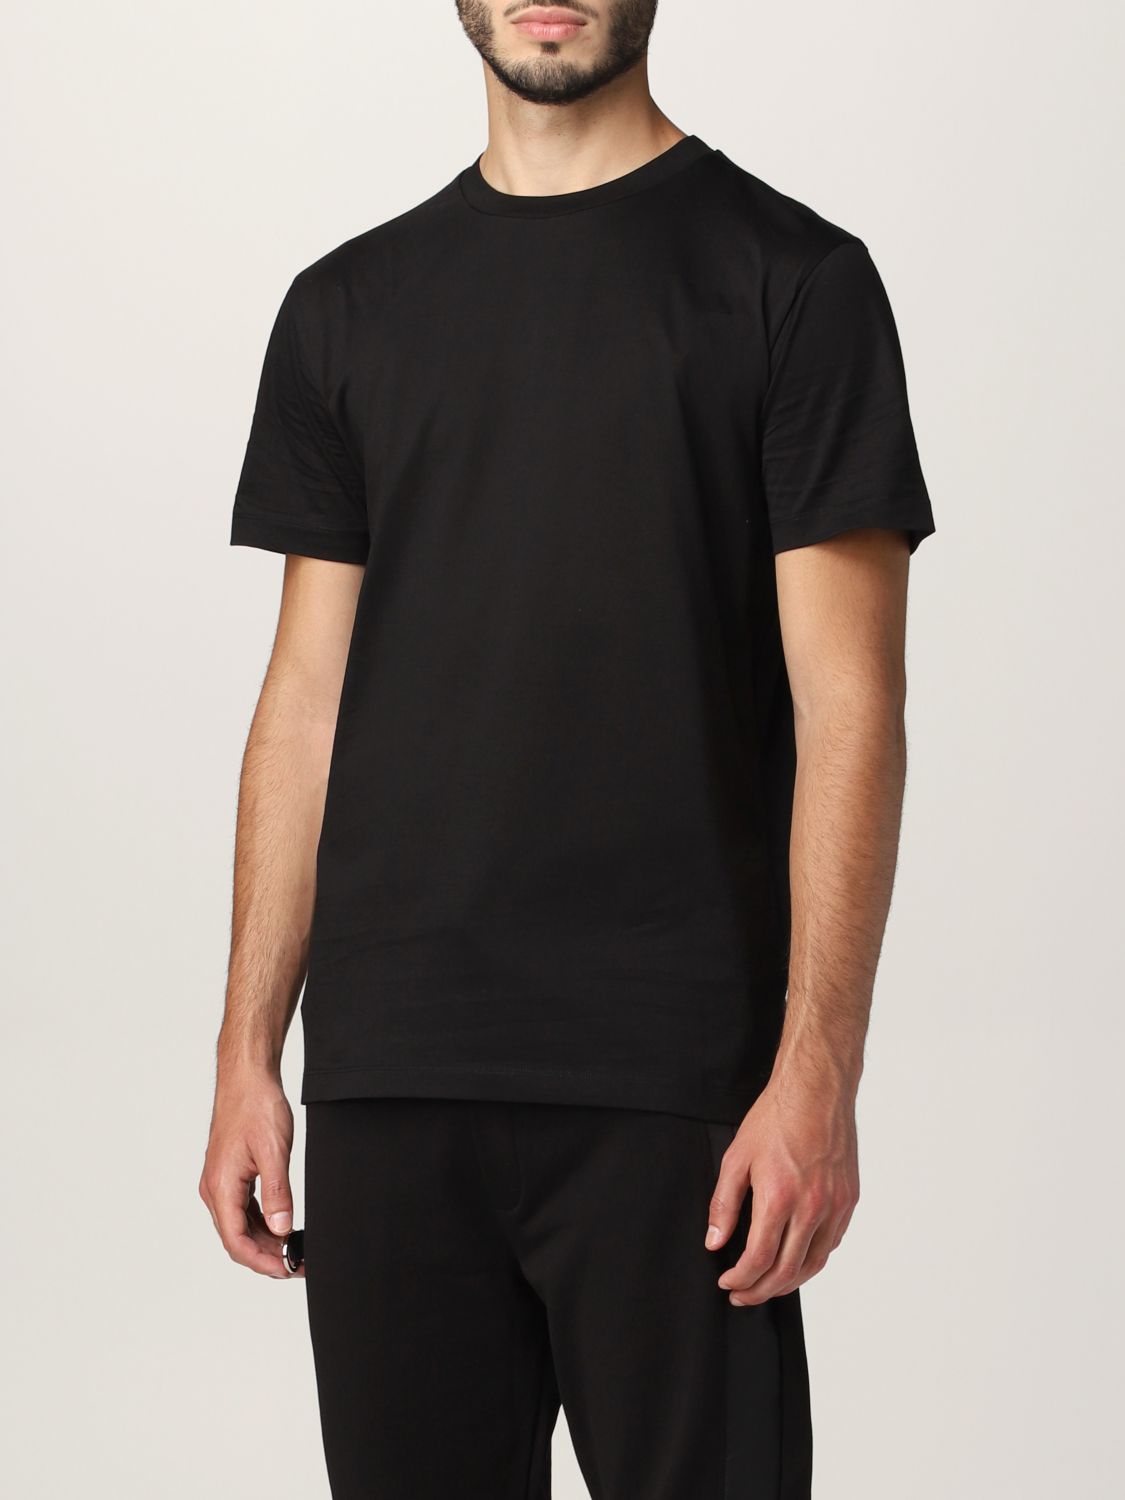 Les Hommes Outlet: t-shirt for man - Black | Les Hommes t-shirt ...